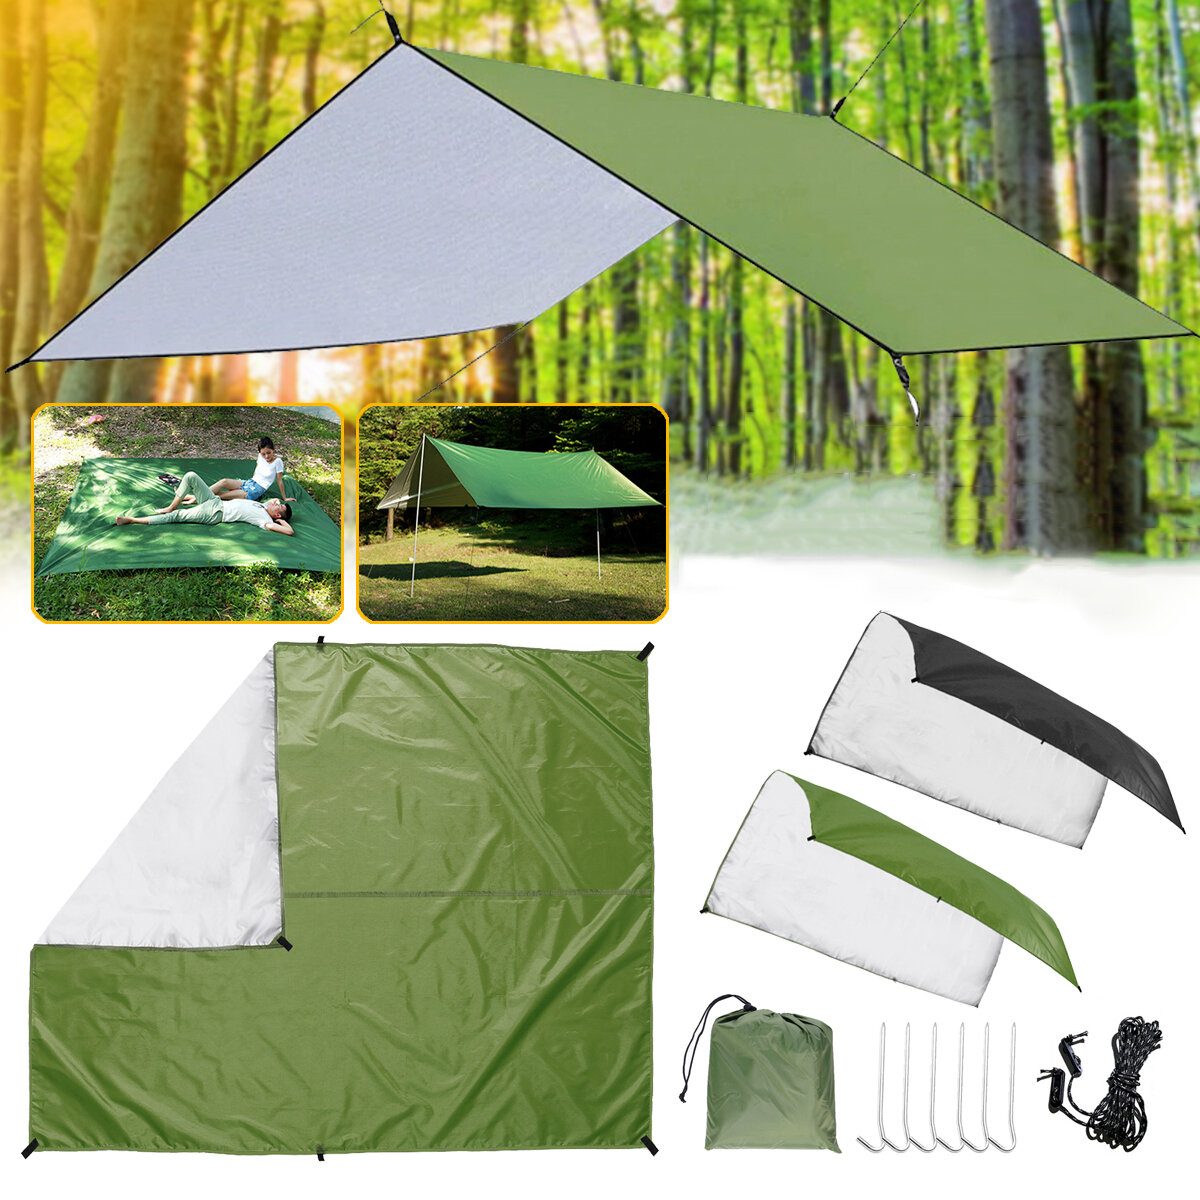 Waterdicht zonnescherm van 3x3 meter voor zonbescherming, picknickmat voor buitenactiviteiten, camping, strand, tuin of terras.